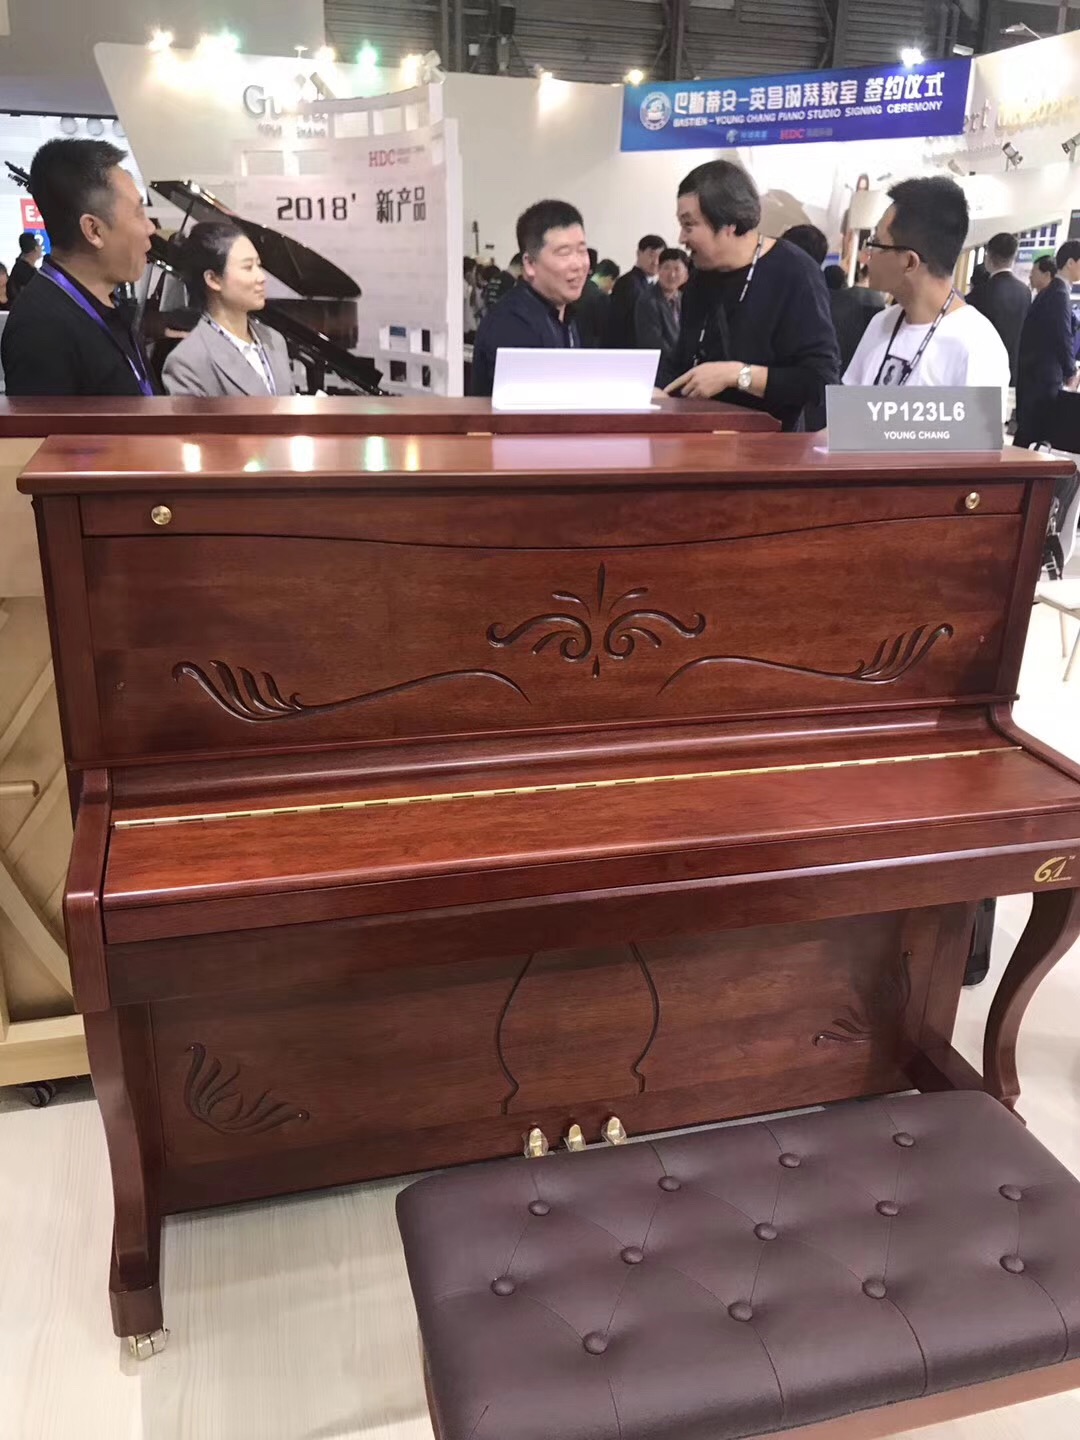 英昌钢琴YP123L6